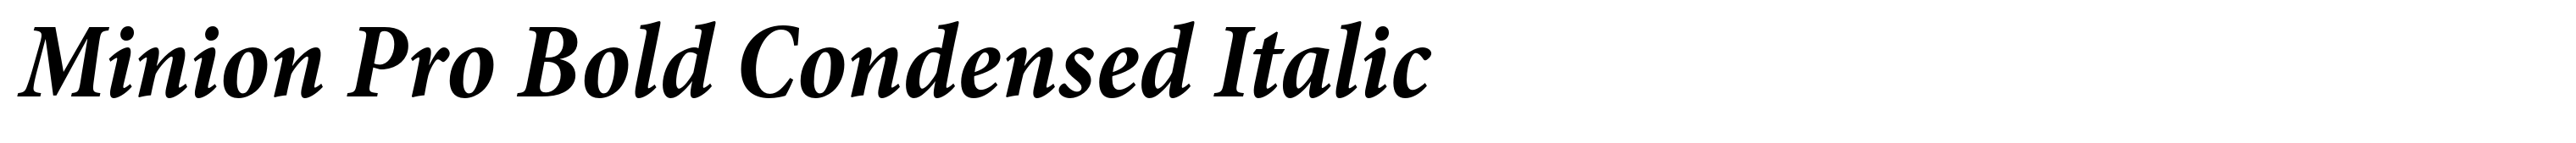 Minion Pro Bold Condensed Italic